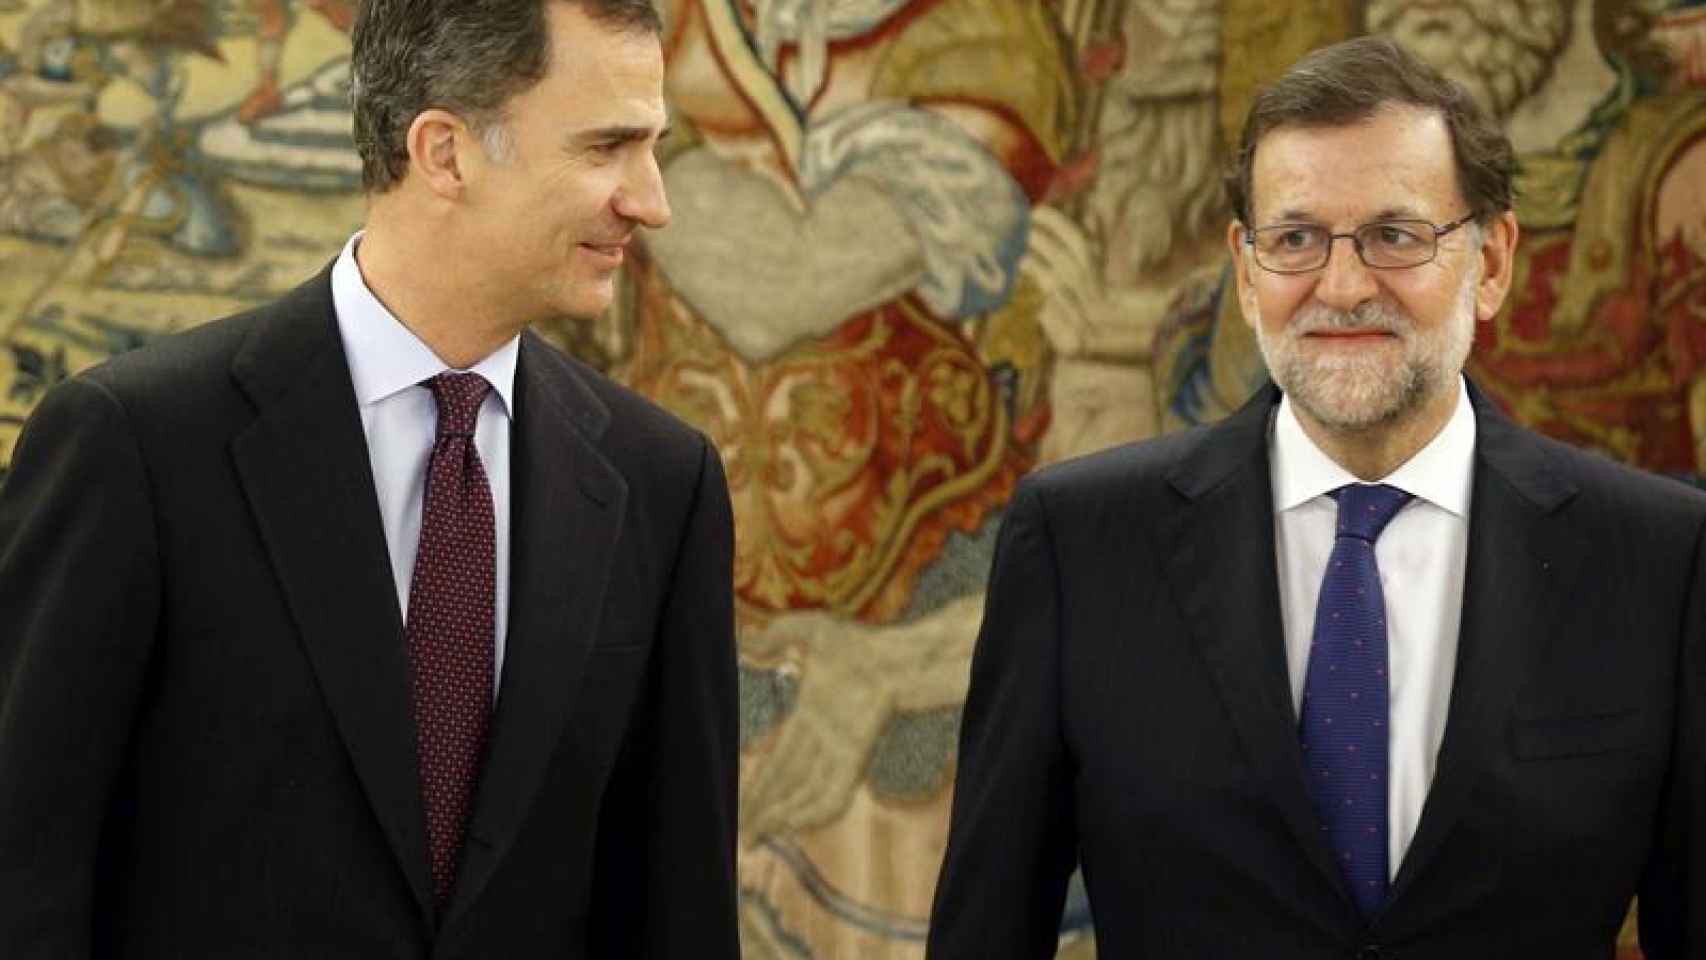 Concluye la reunión de Rajoy con el Rey